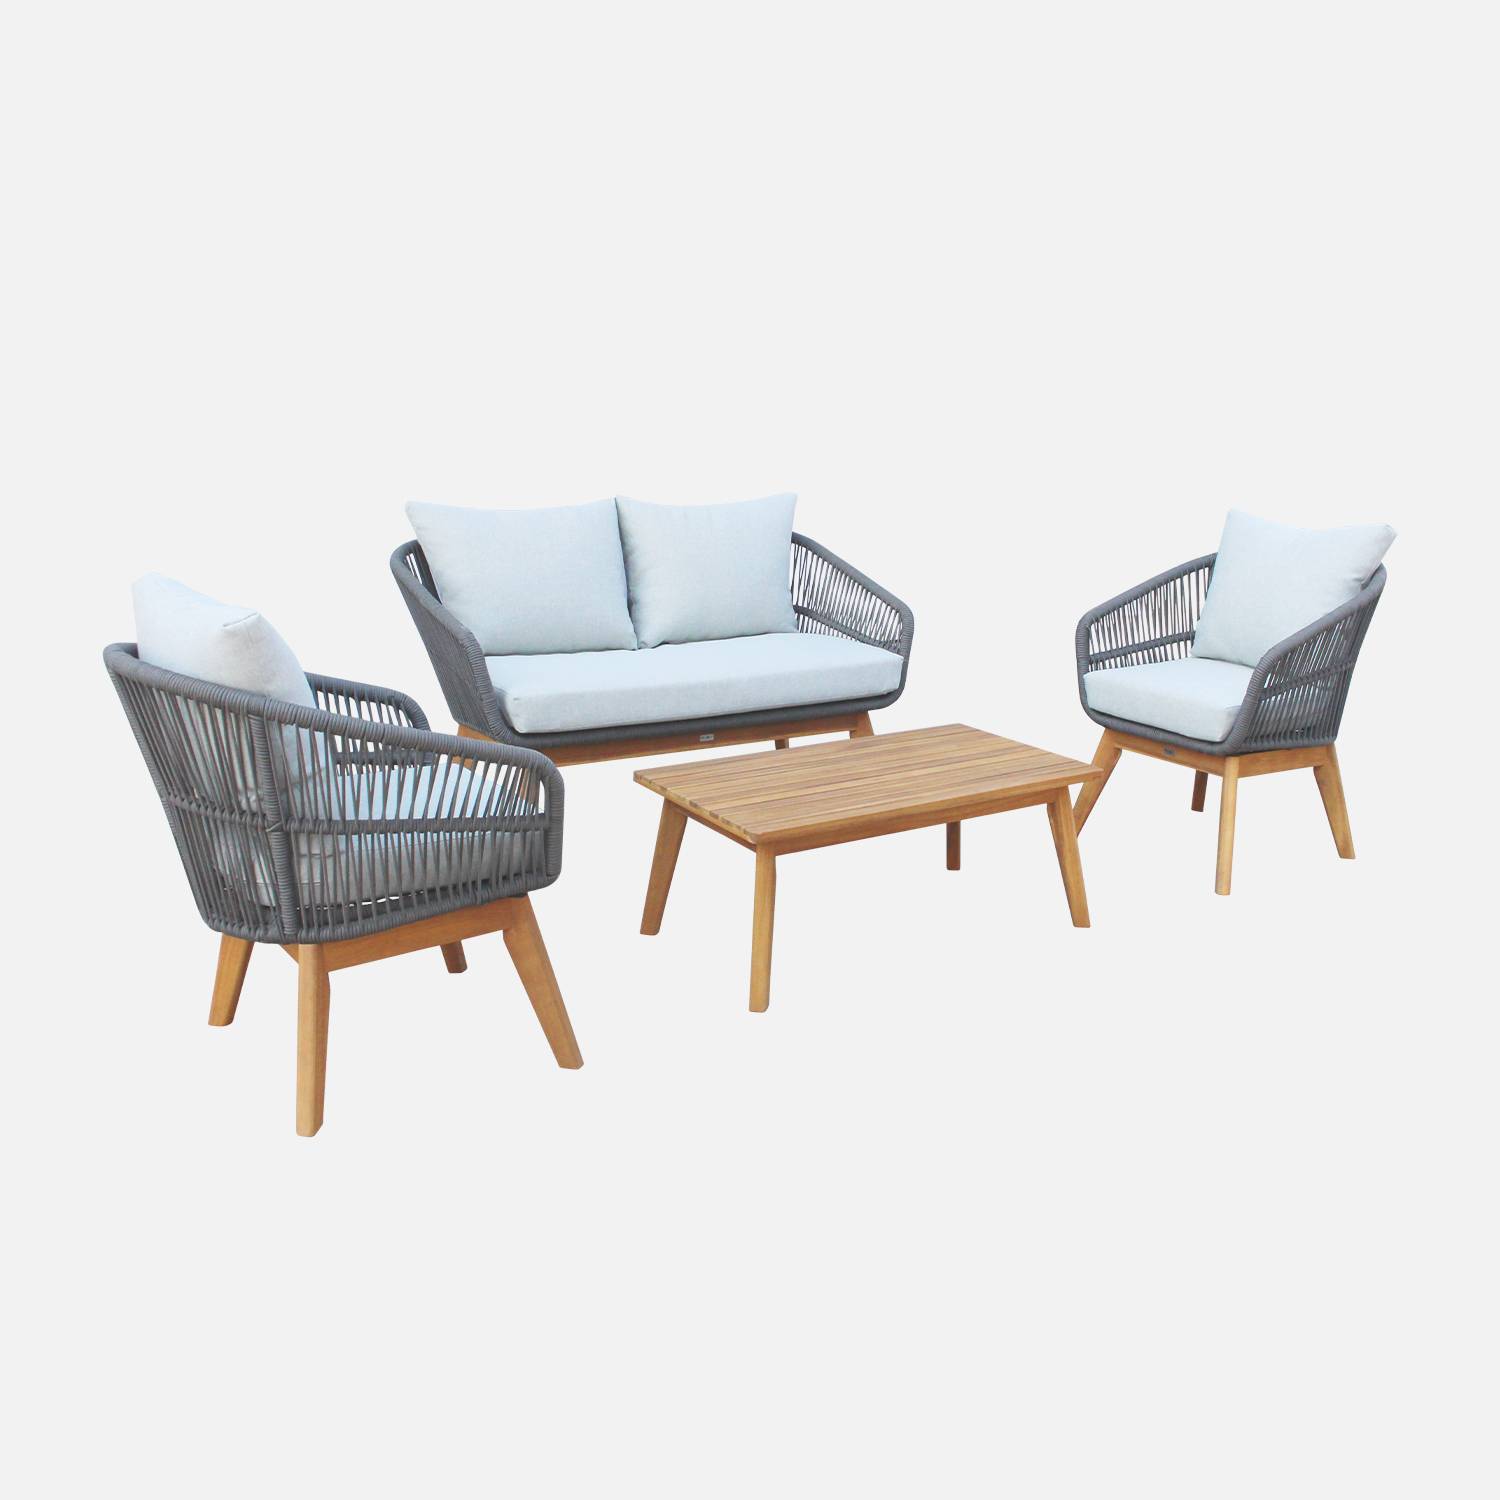 Gartengarnitur 4 Sitze - ROSARIO - aus geflochtenen Seilen, Holz und Aluminium, grau / graumelierte Kissen Photo2